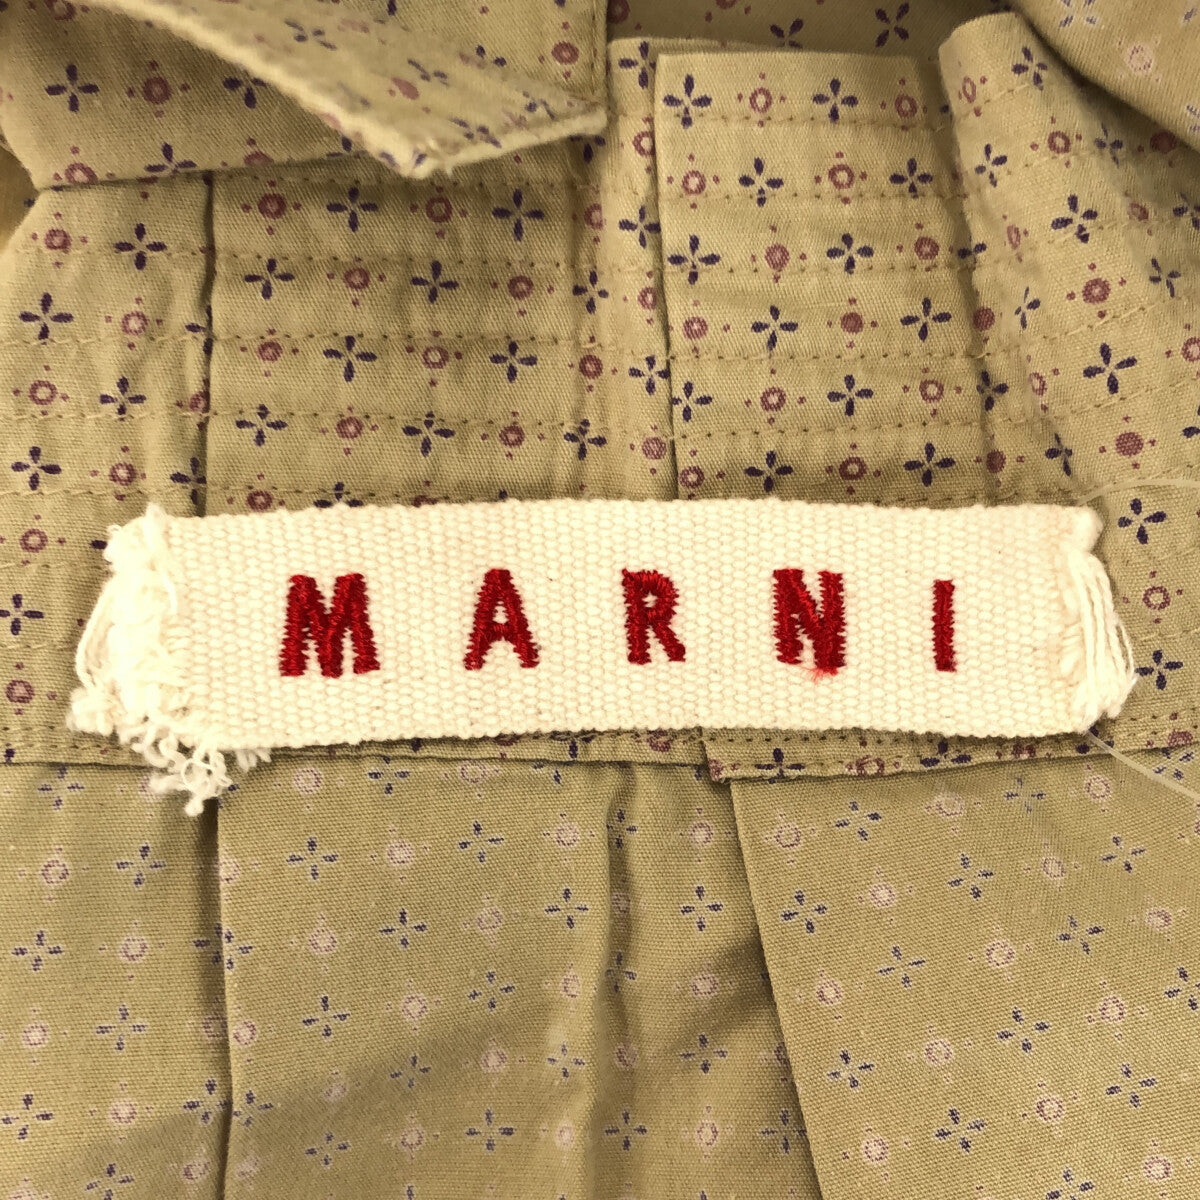 MARNI / マルニ | 小紋柄 ノースリーブ チュニック ブラウス | 42 | ベージュ | レディース